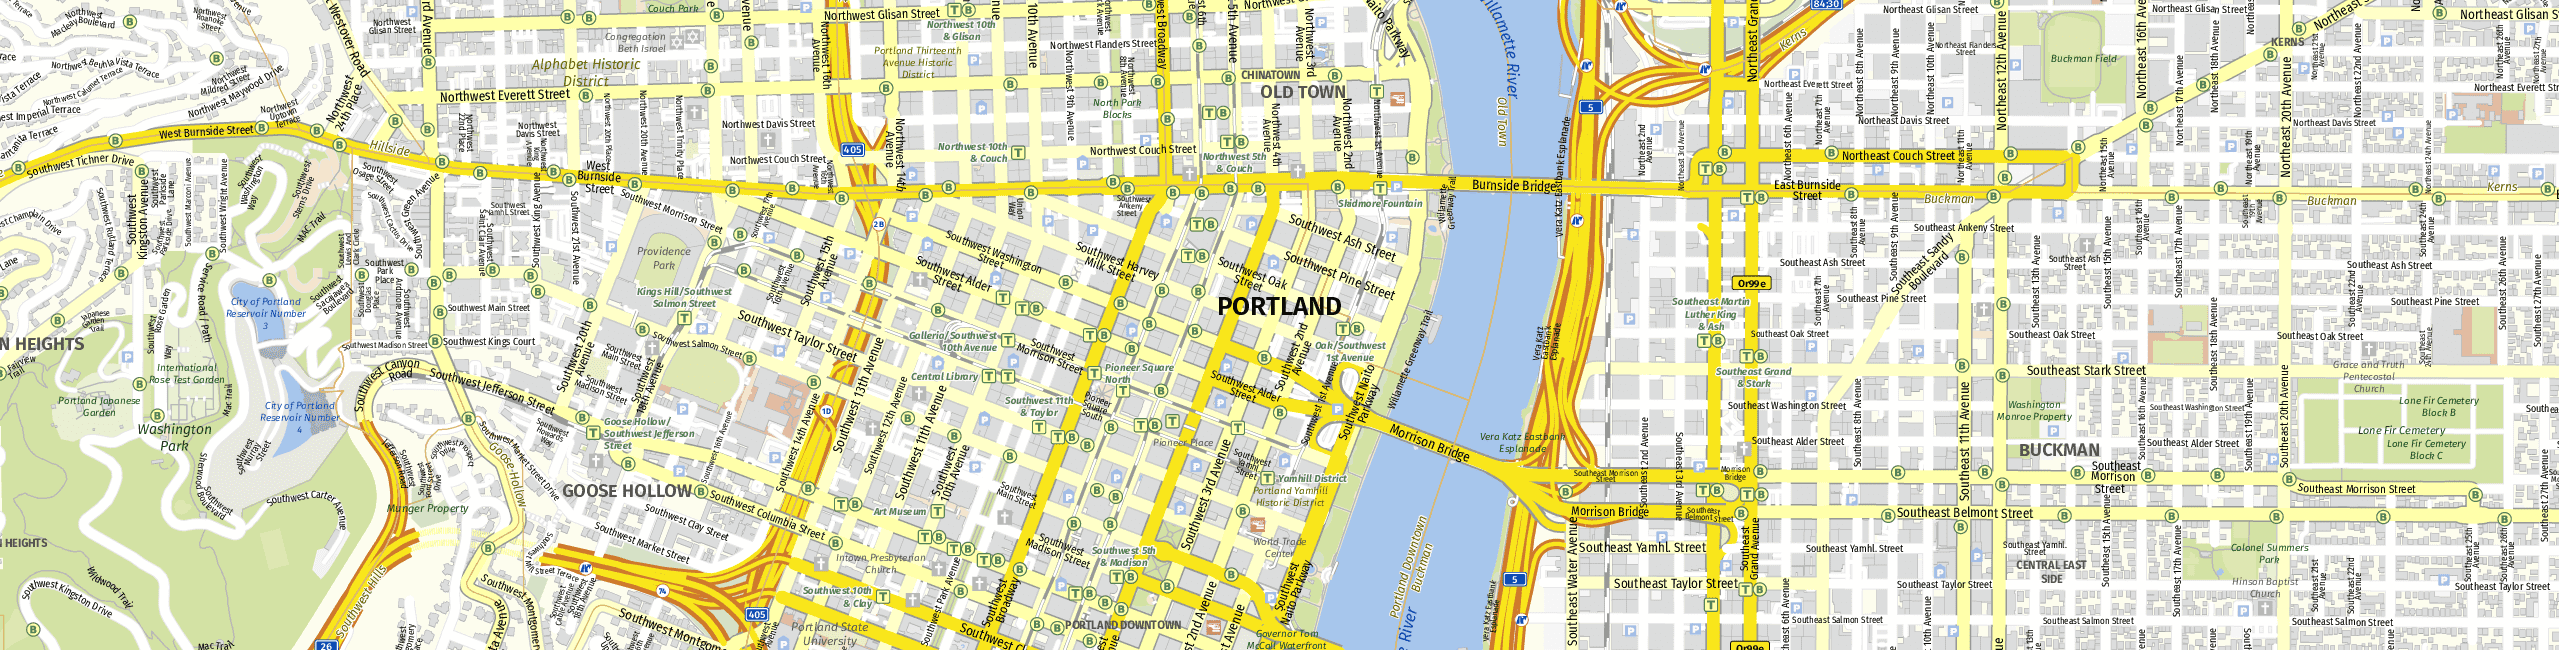 Stadtplan Portland zum Downloaden.